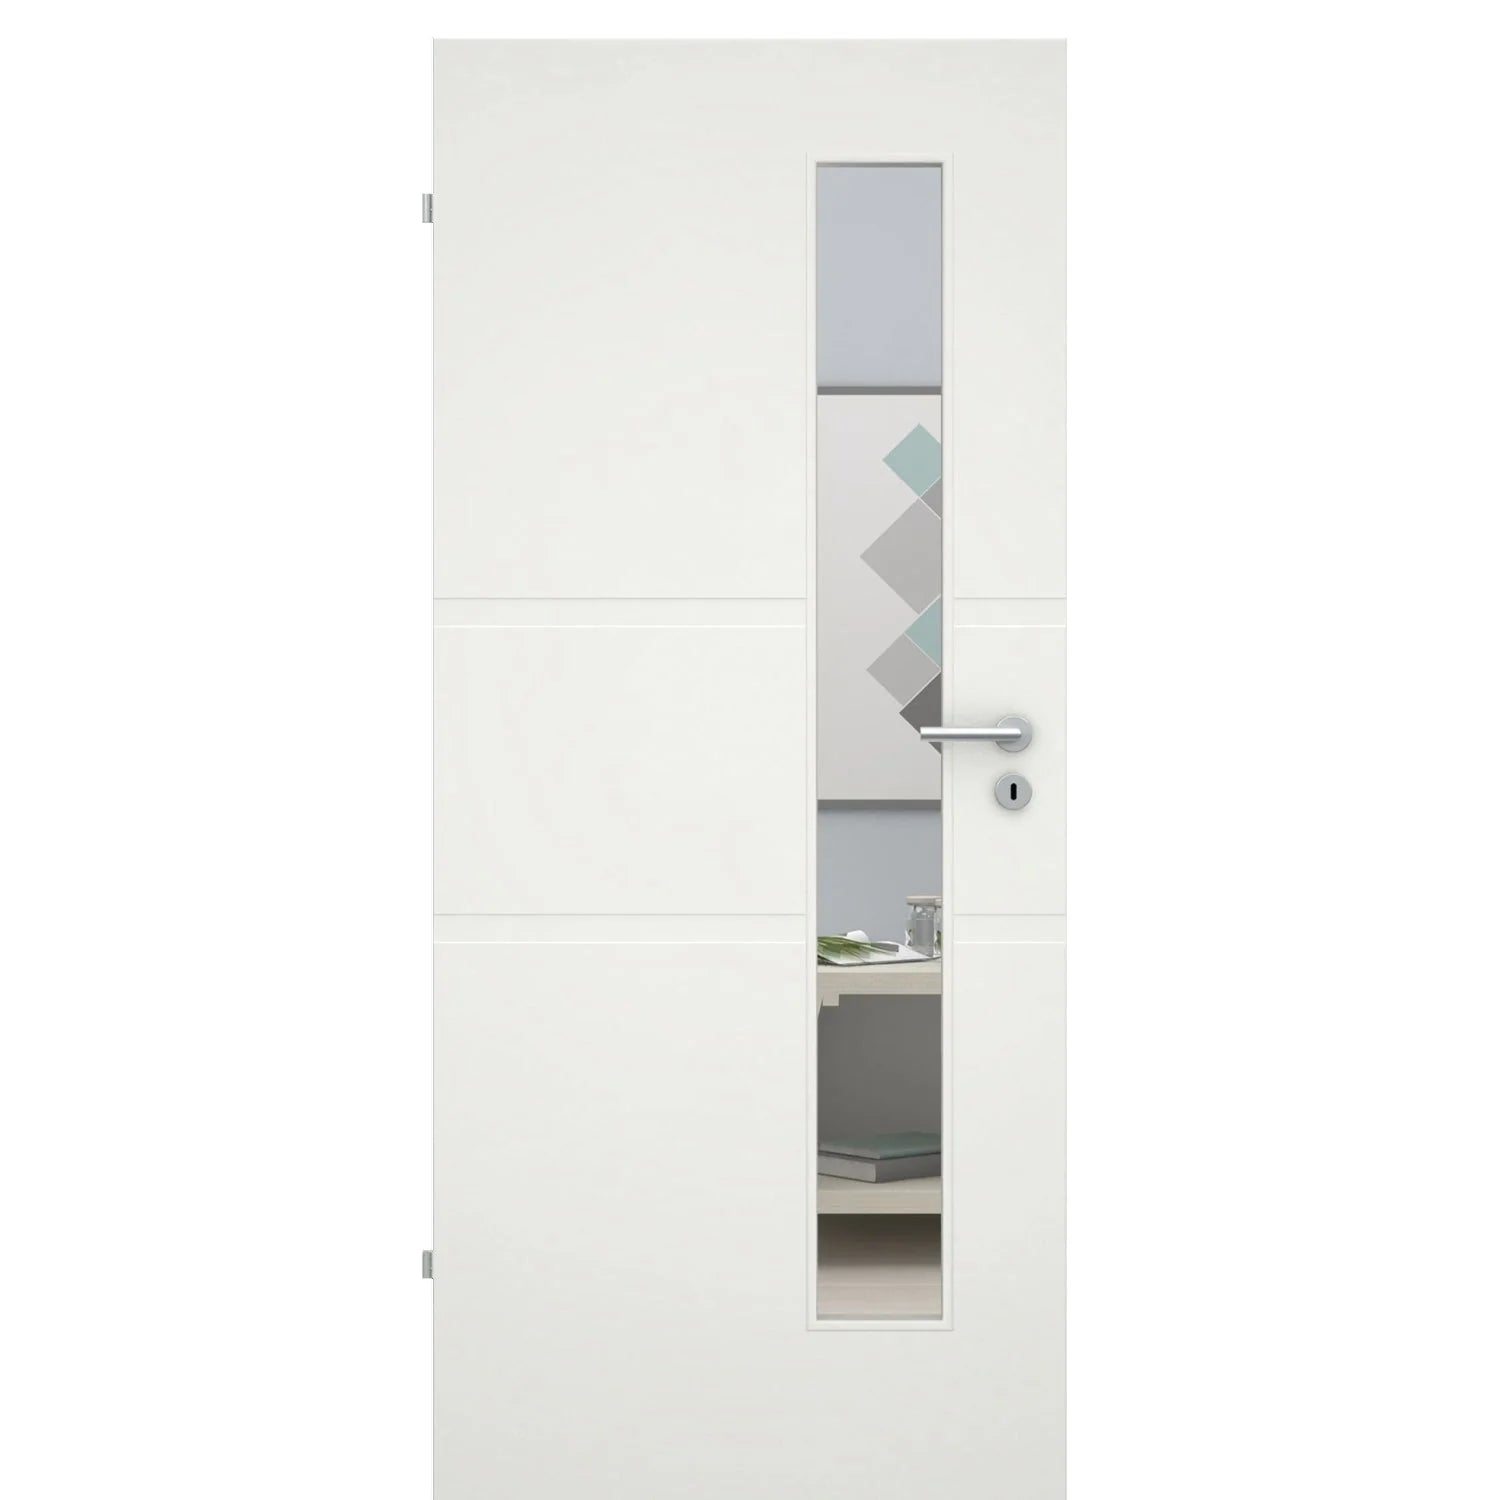 Zimmertür mit Lichtausschnitt soft-weiß 2 breite Rillen Eckkante - Modell Designtür QB21LAS